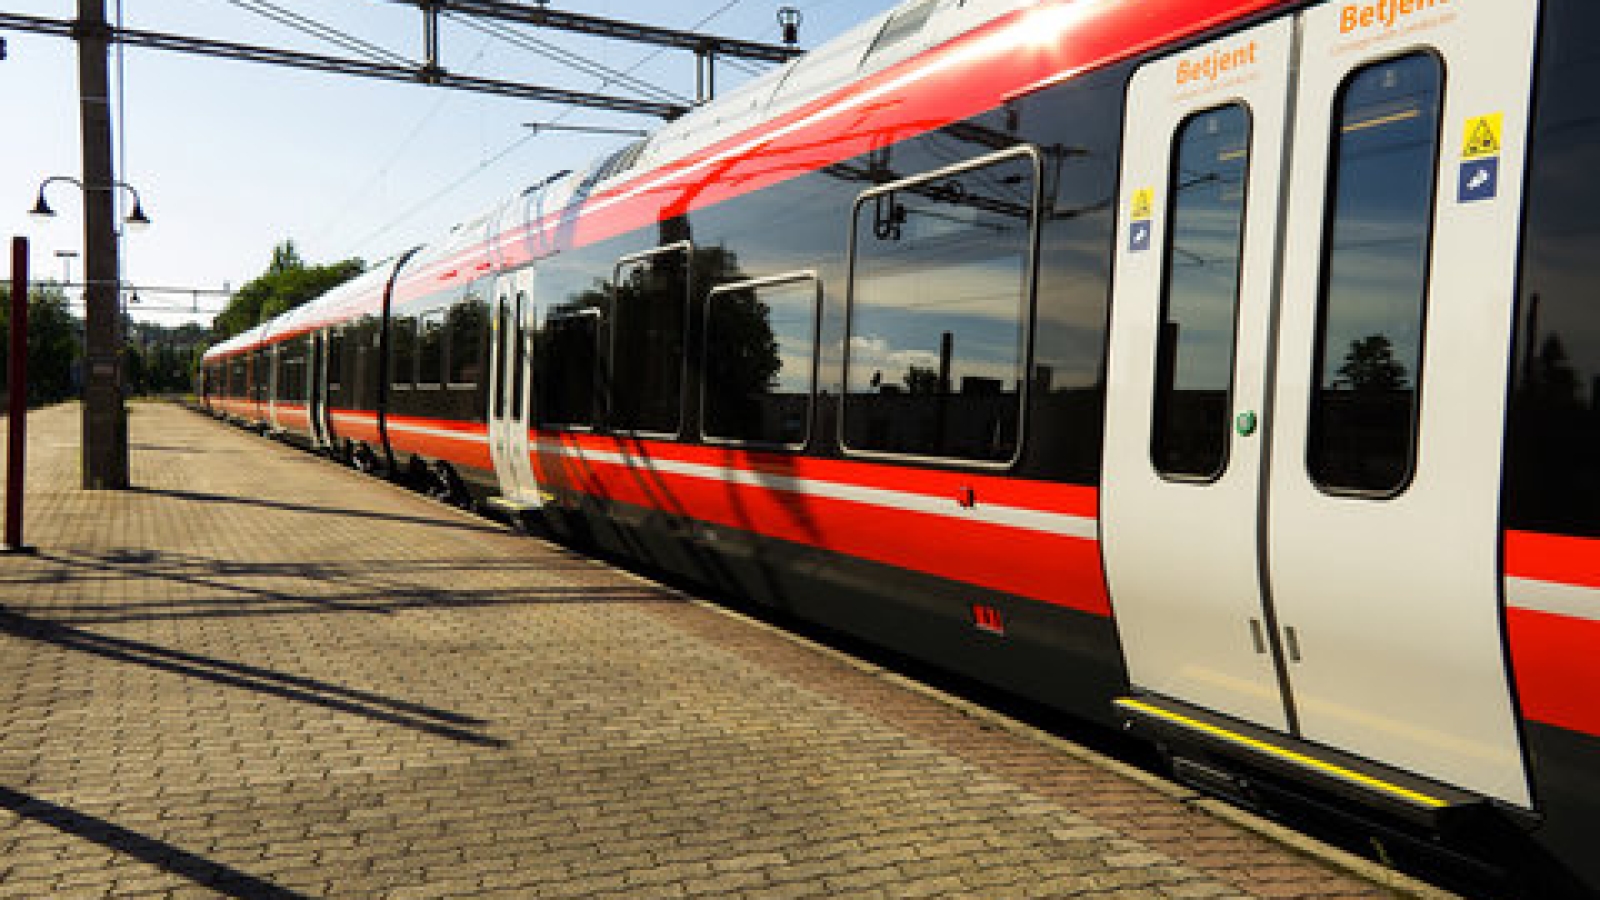 Jernbanepakke IV tilrettelegger for konkurranseutsetting av persontrafikken. Skal Stortinget reversere jernbanereformen, må det også stoppe jernbanepakka.